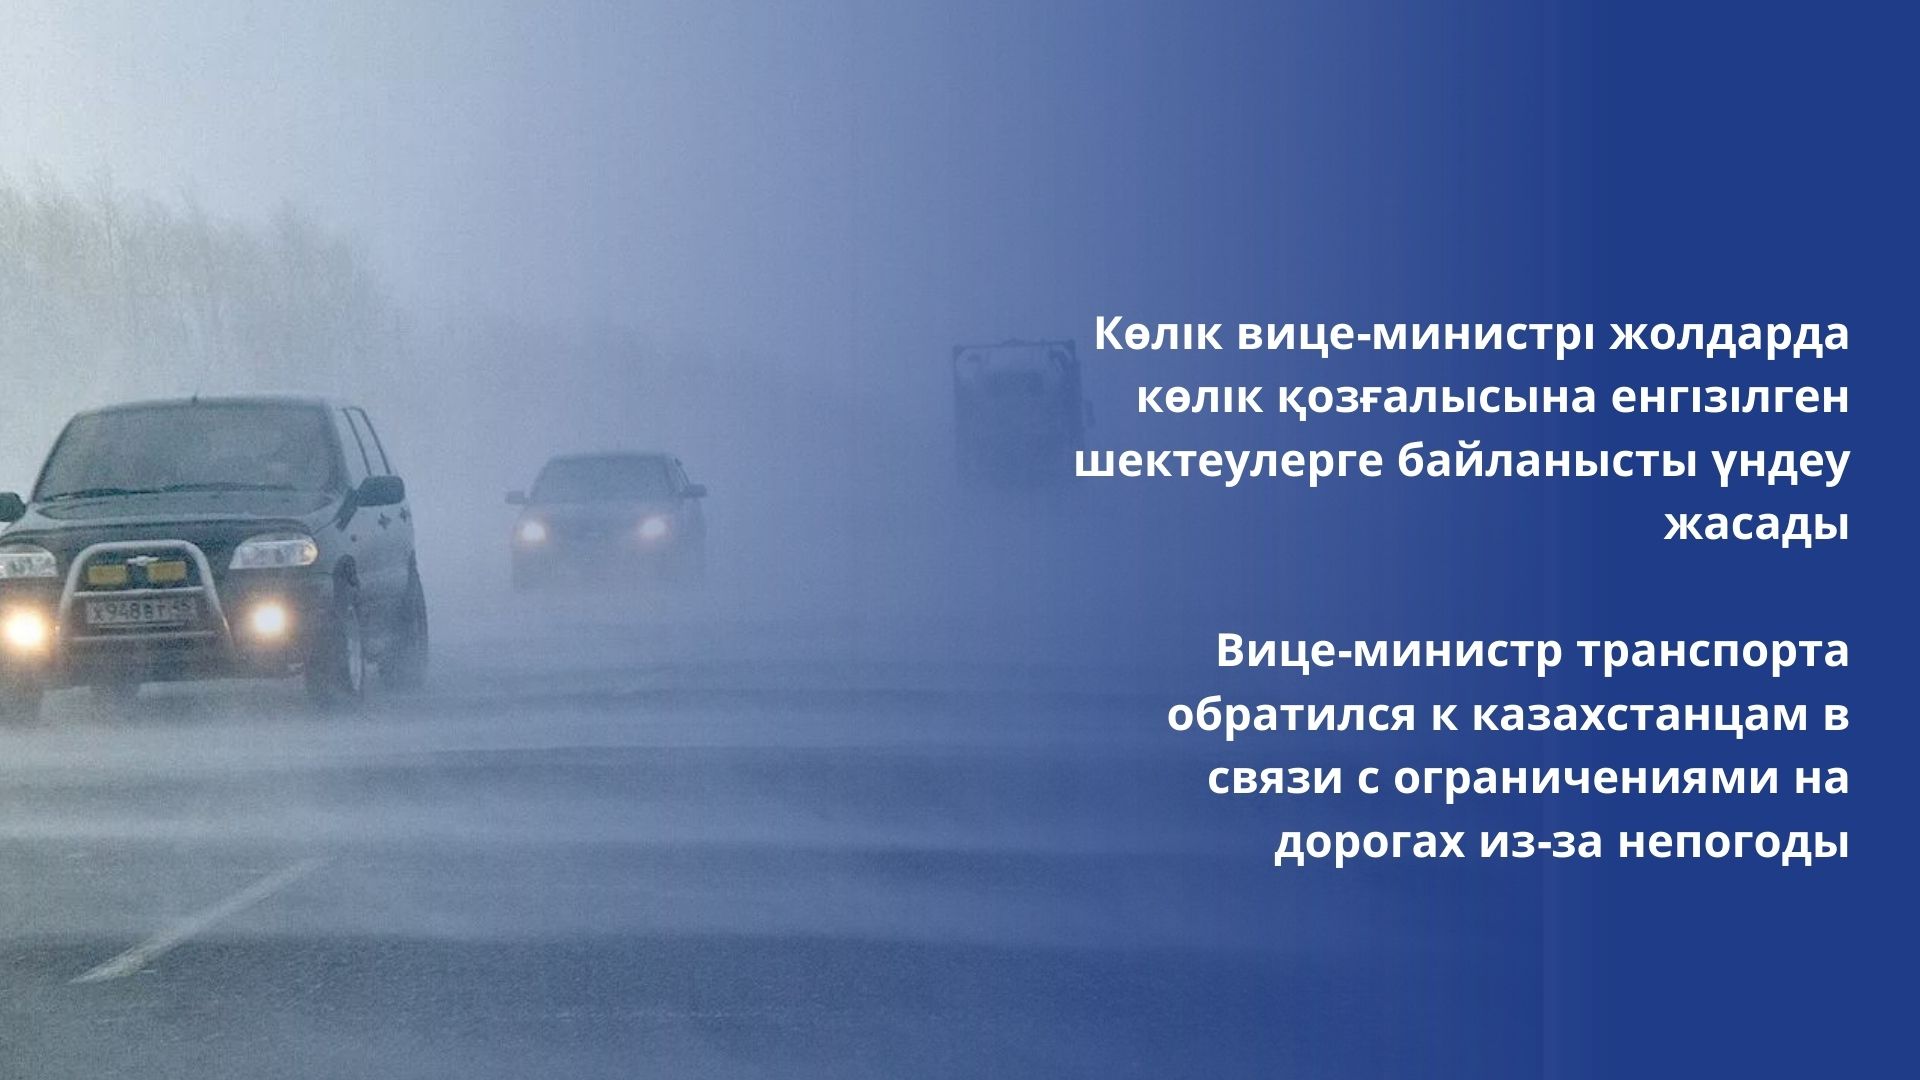 Вице-министр транспорта обратился к казахстанцам в связи с ограничениями на дорогах из-за непогоды